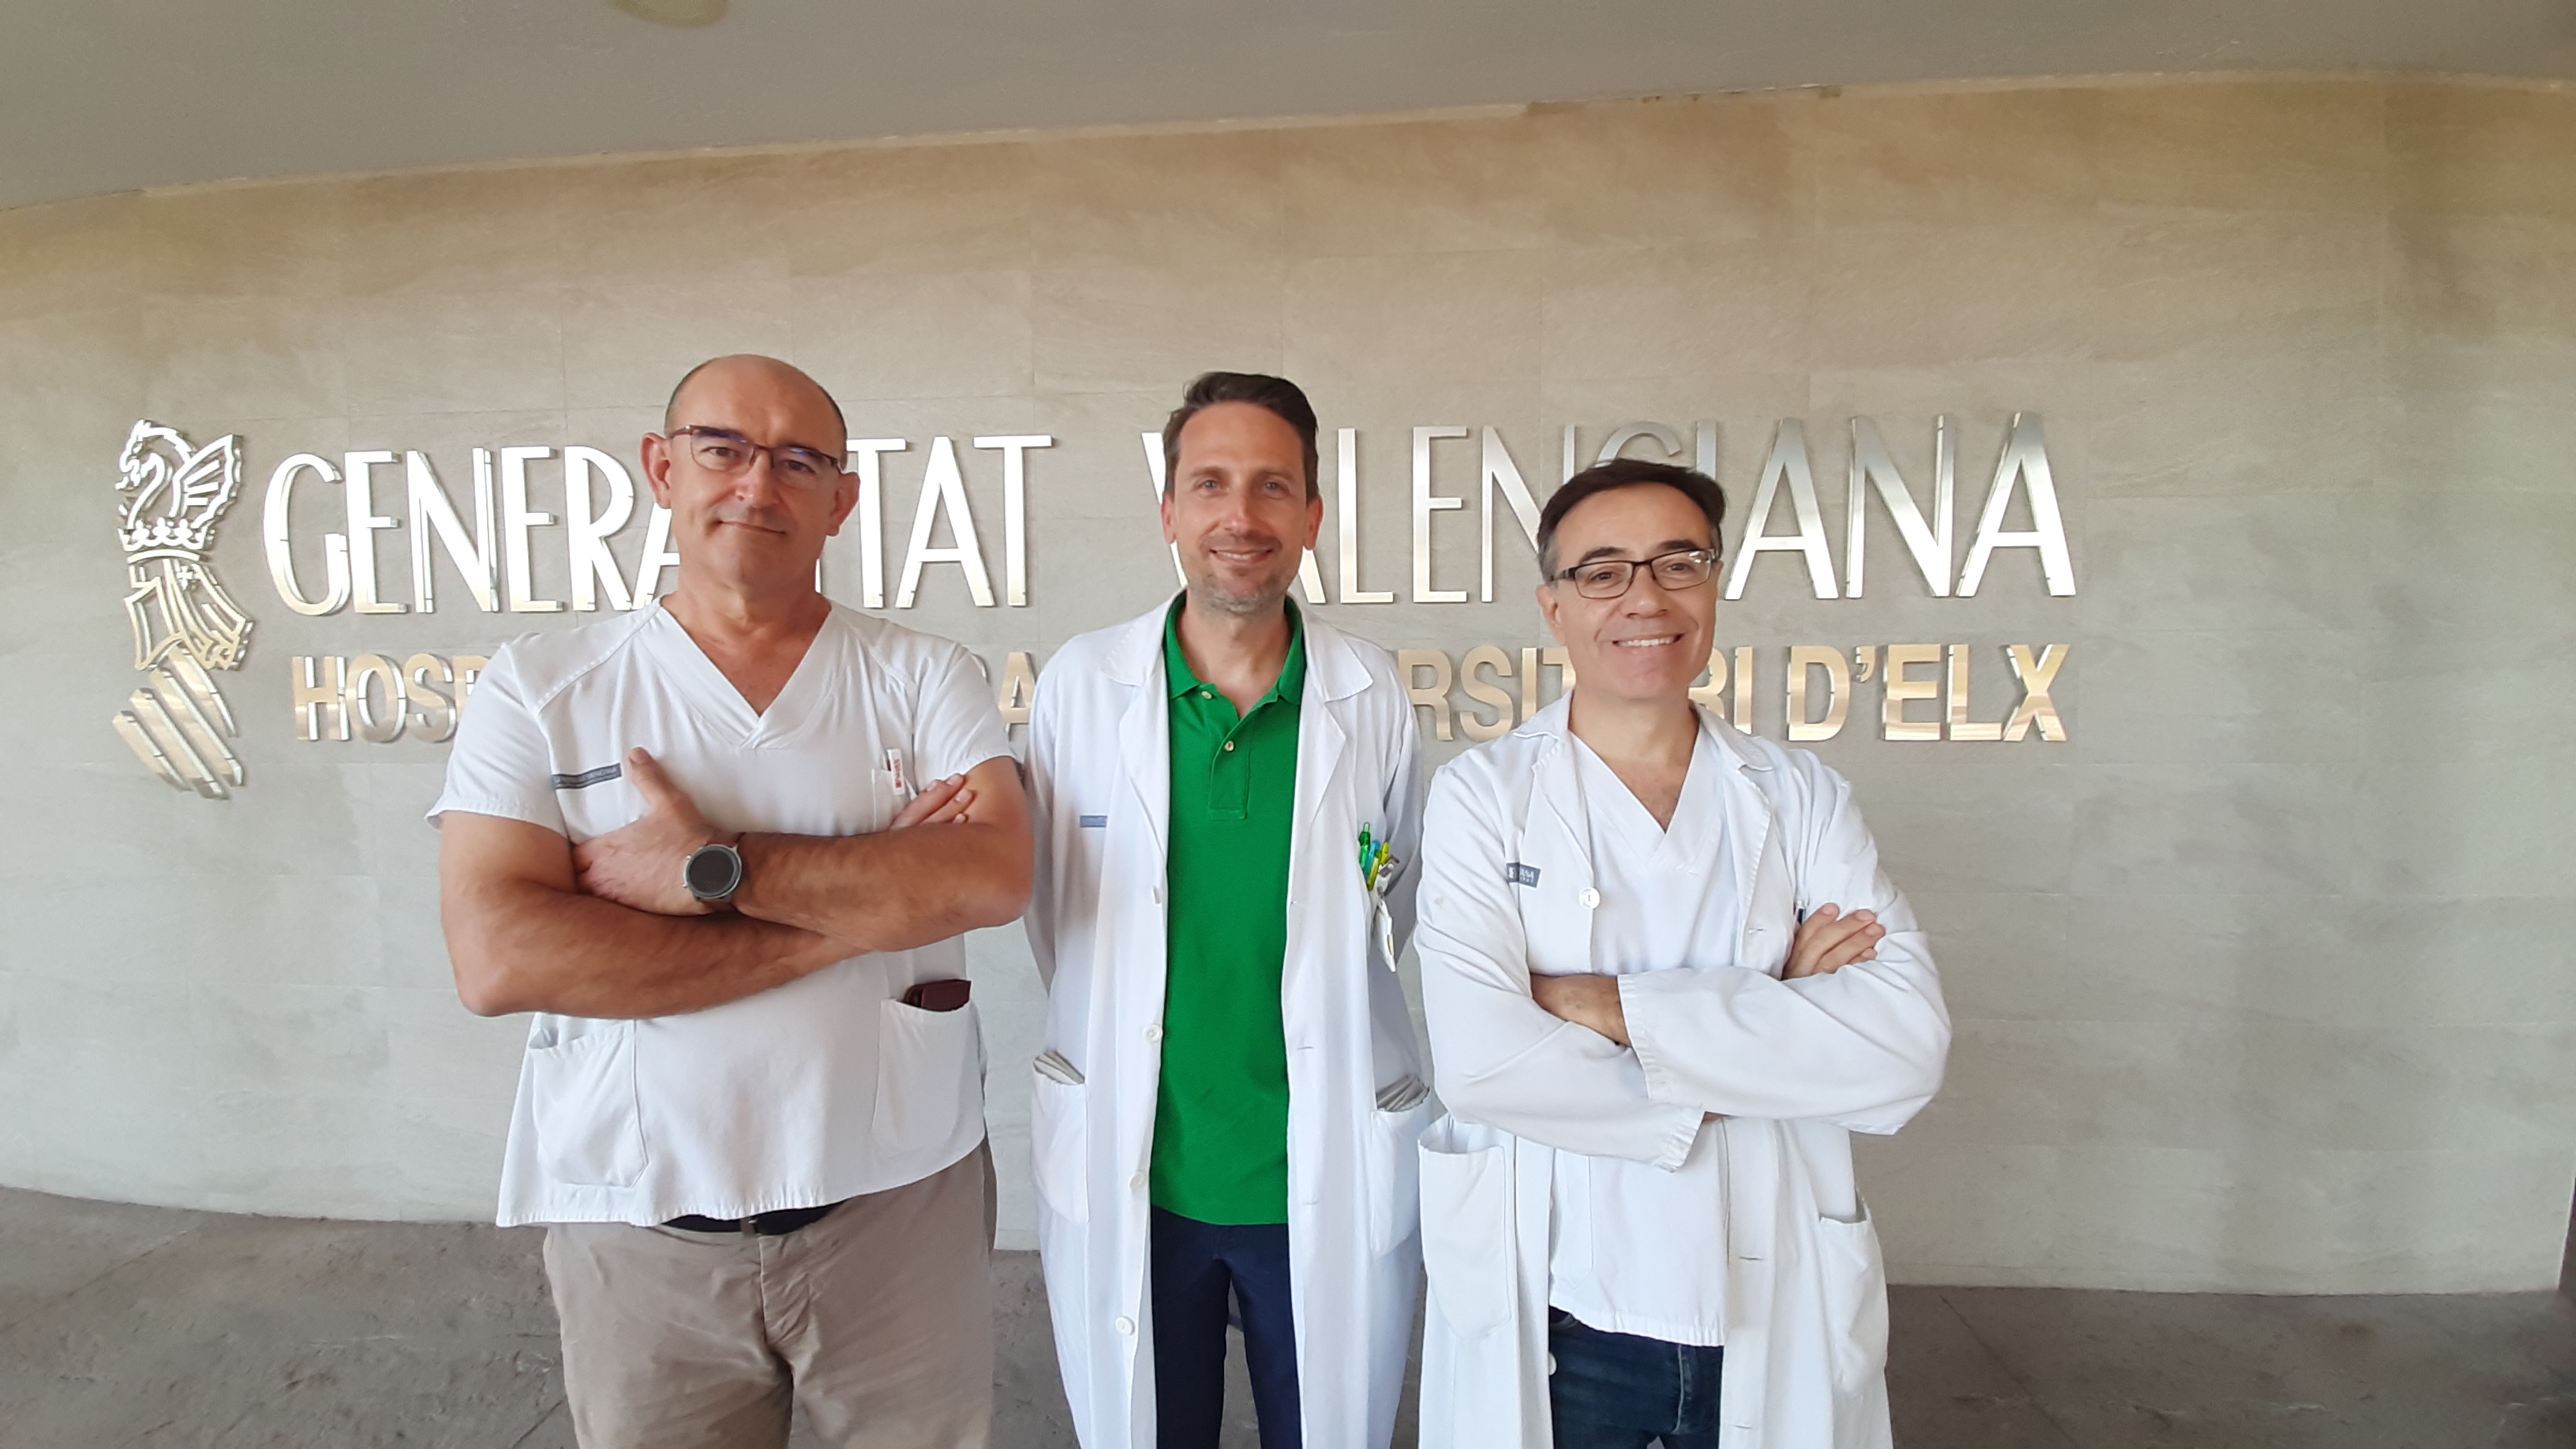 L'Hospital General Universitari d'Elx participa en un assaig clínic internacional per al tractament 